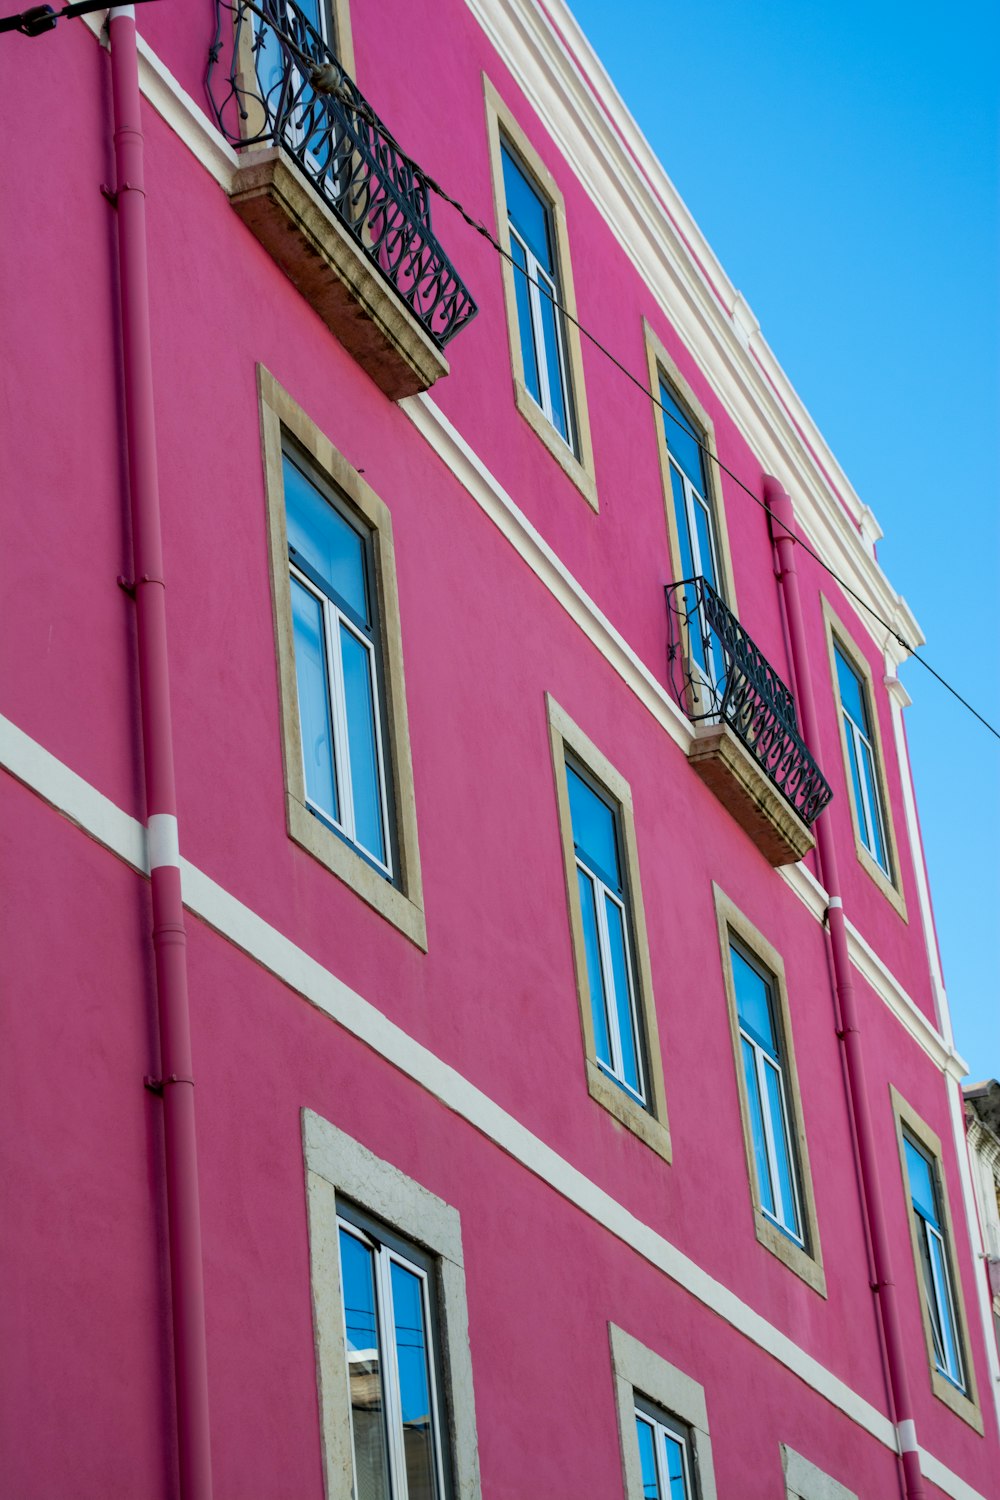 ein rosafarbenes Gebäude mit Balkonen und Balkonen auf den Balkonen